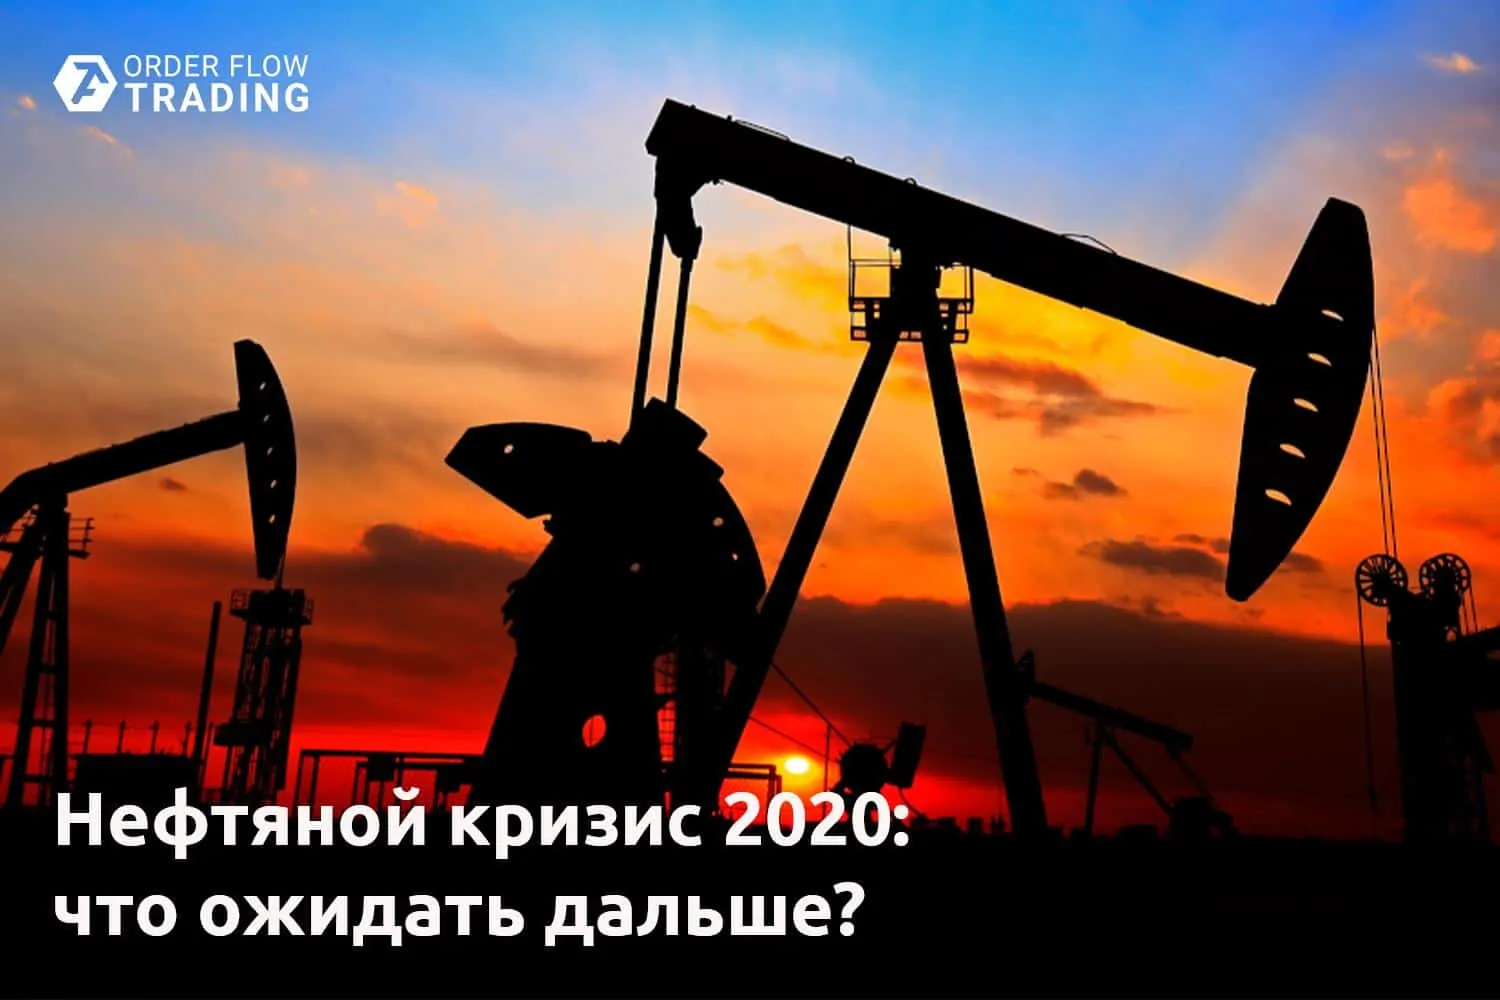 Нефтяной кризис 2020: что ожидать дальше?